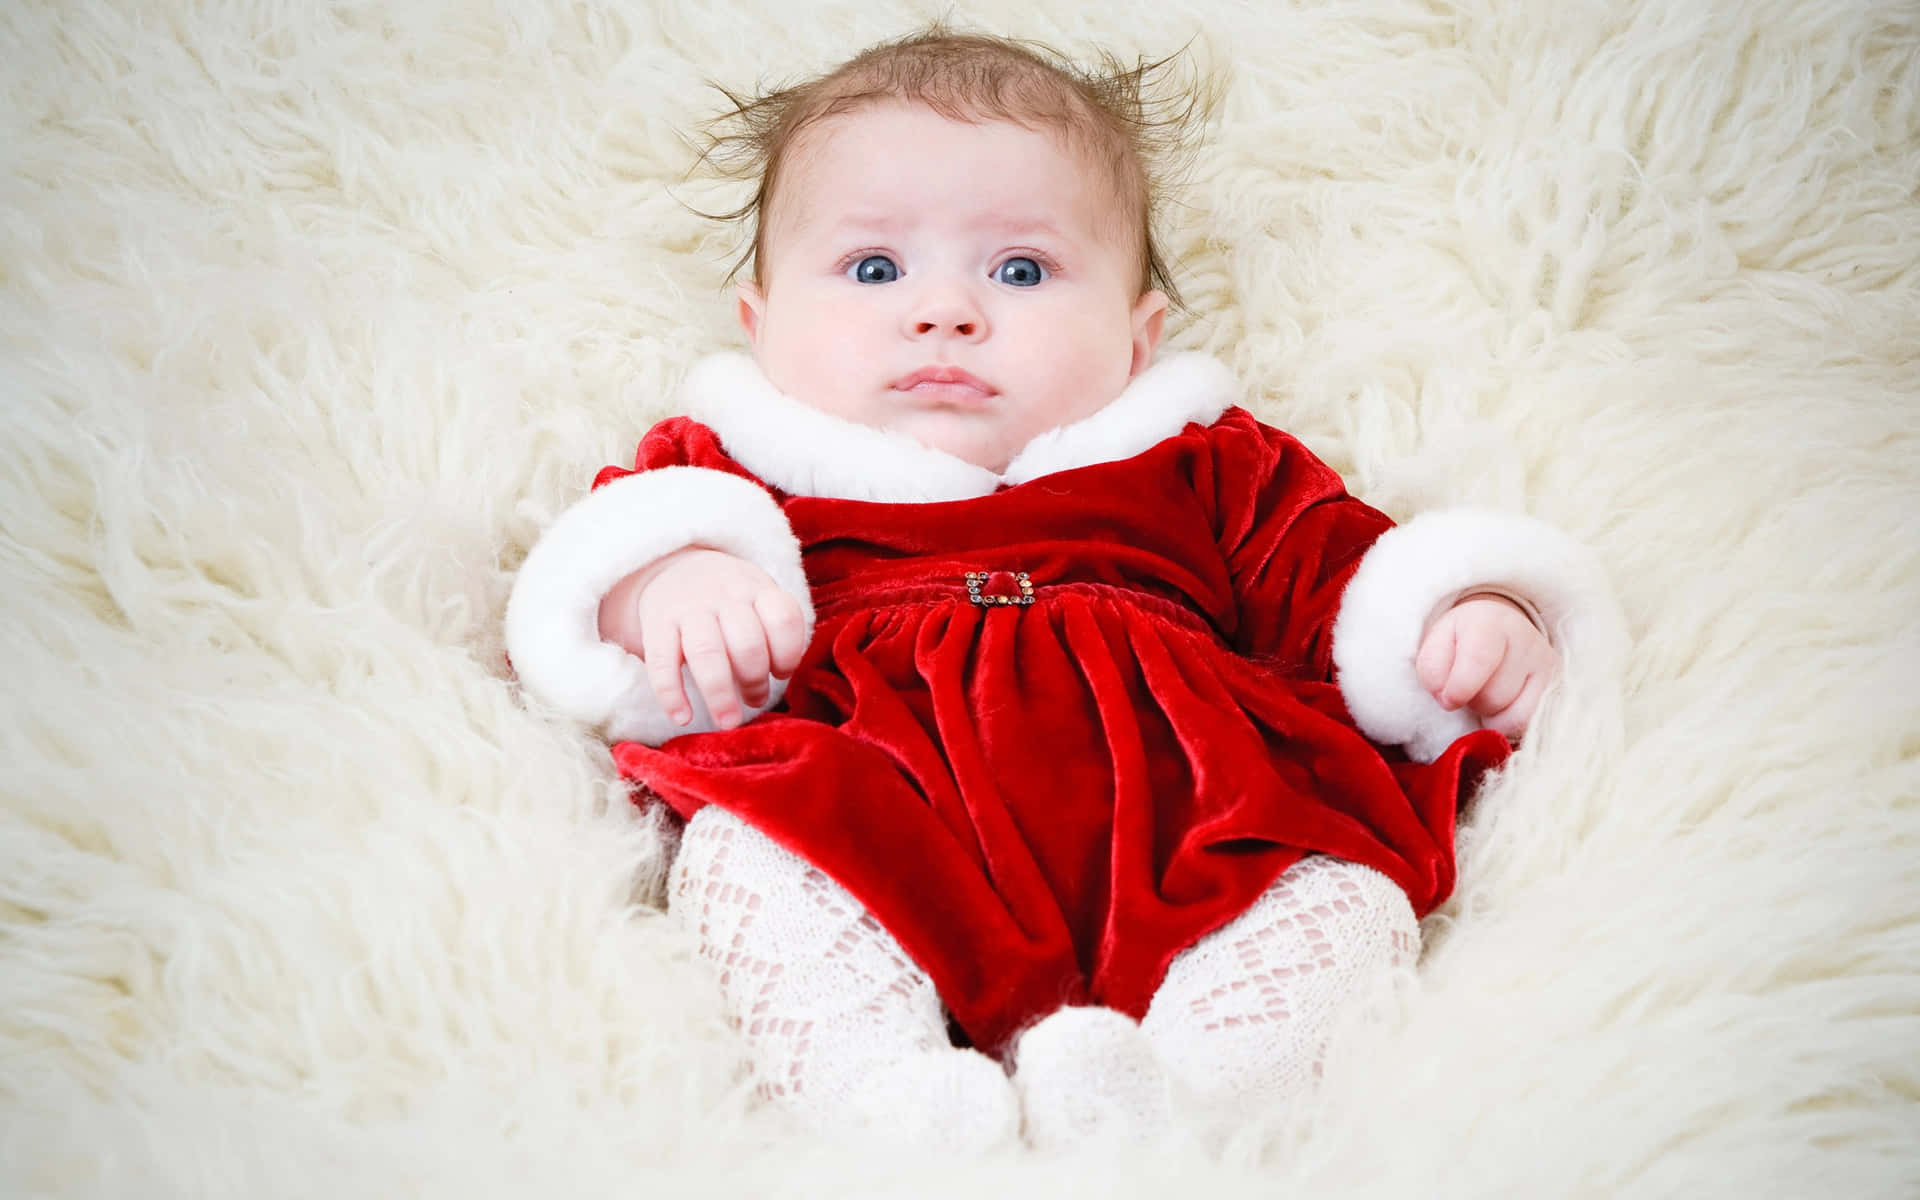 Umbebê Vestido De Papai Noel, Com Um Traje Vermelho, Deitado Em Um Tapete De Pele Branca.